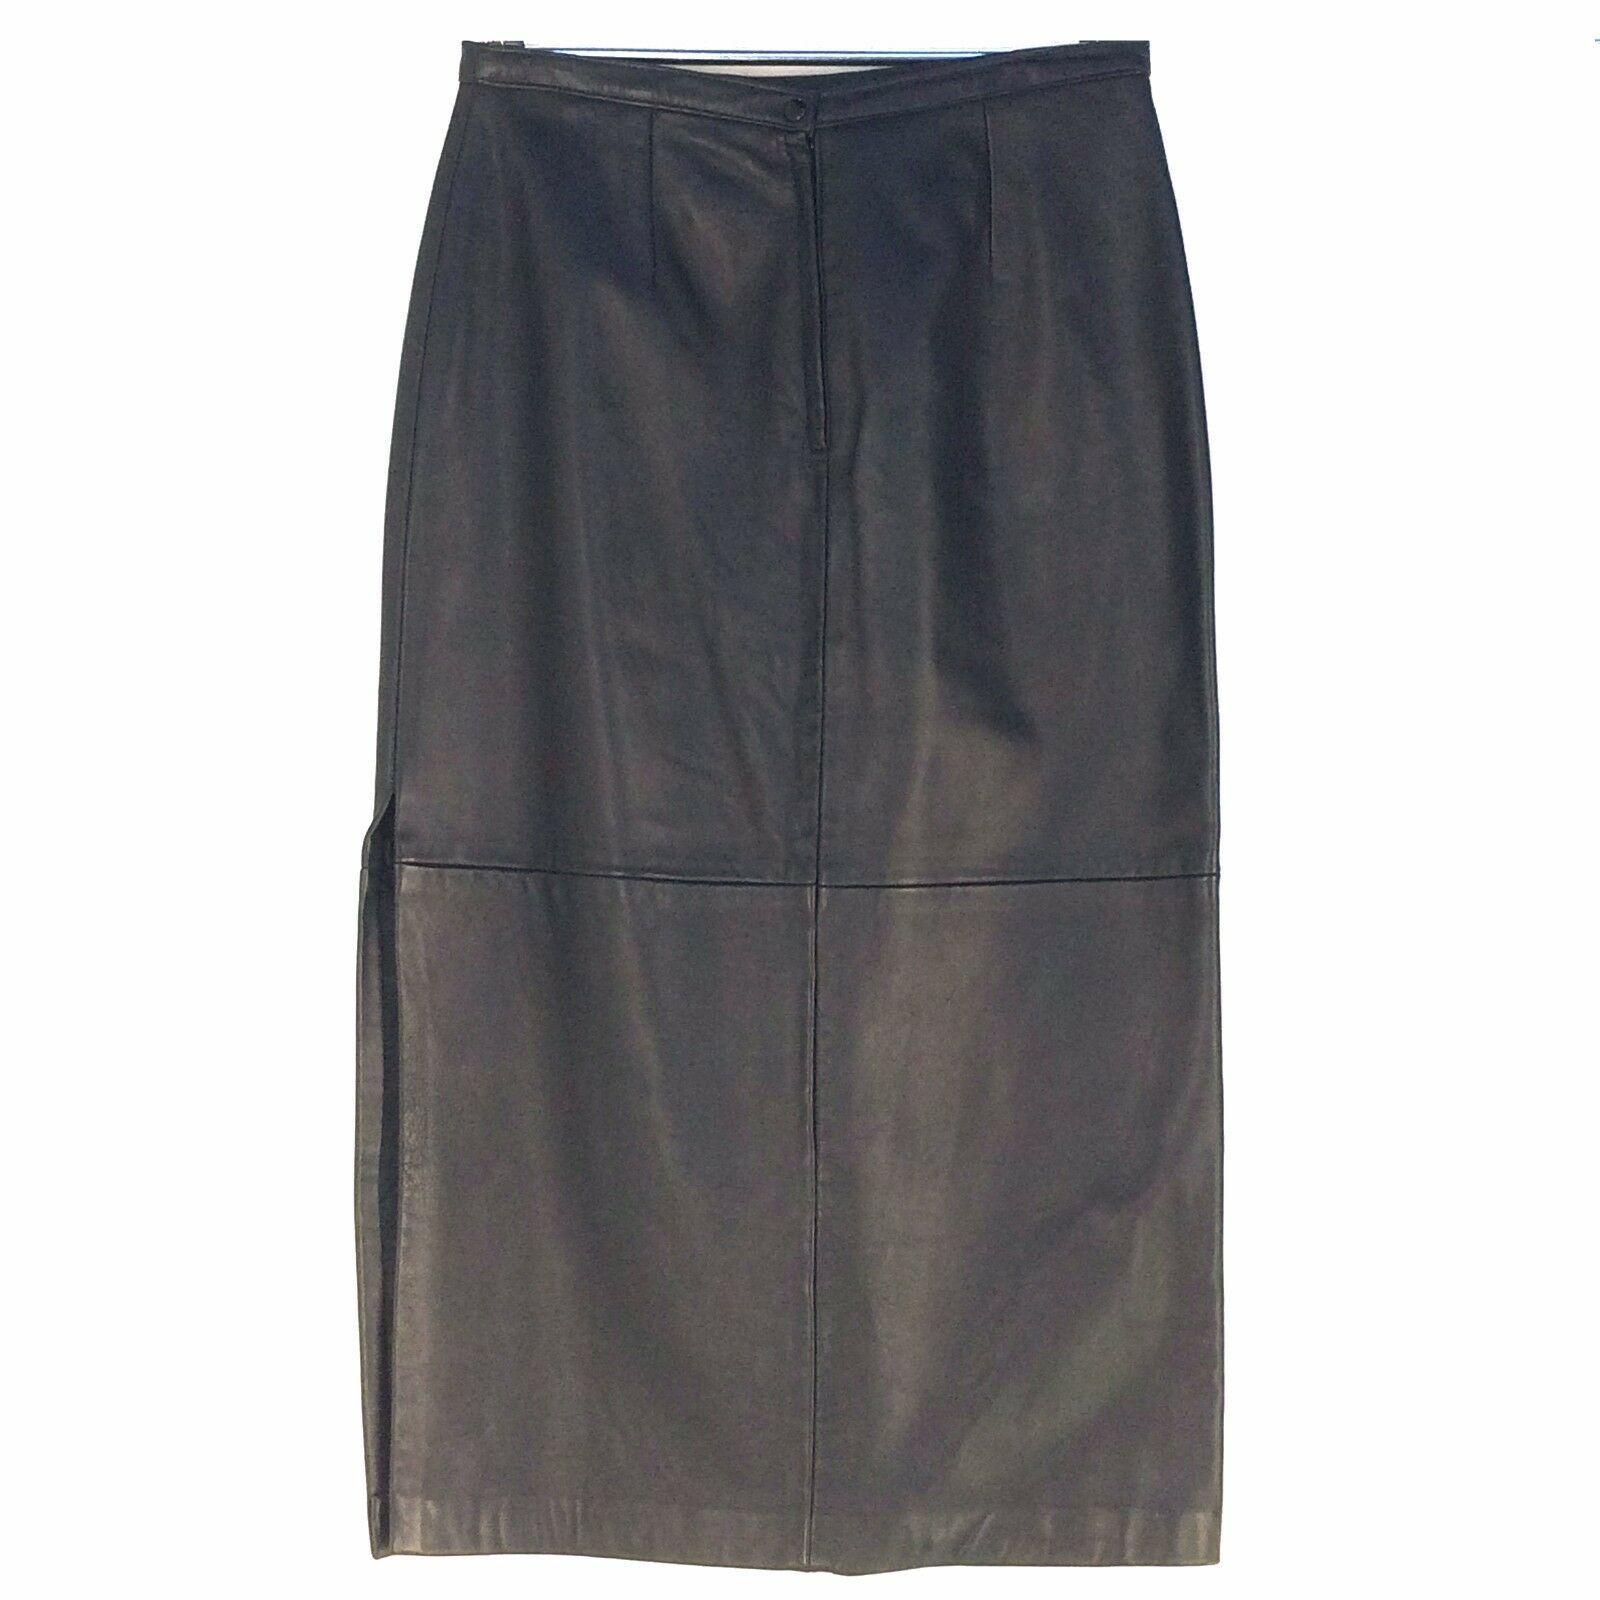 Primary image for Zebra Leather Women's Long Skirt Black